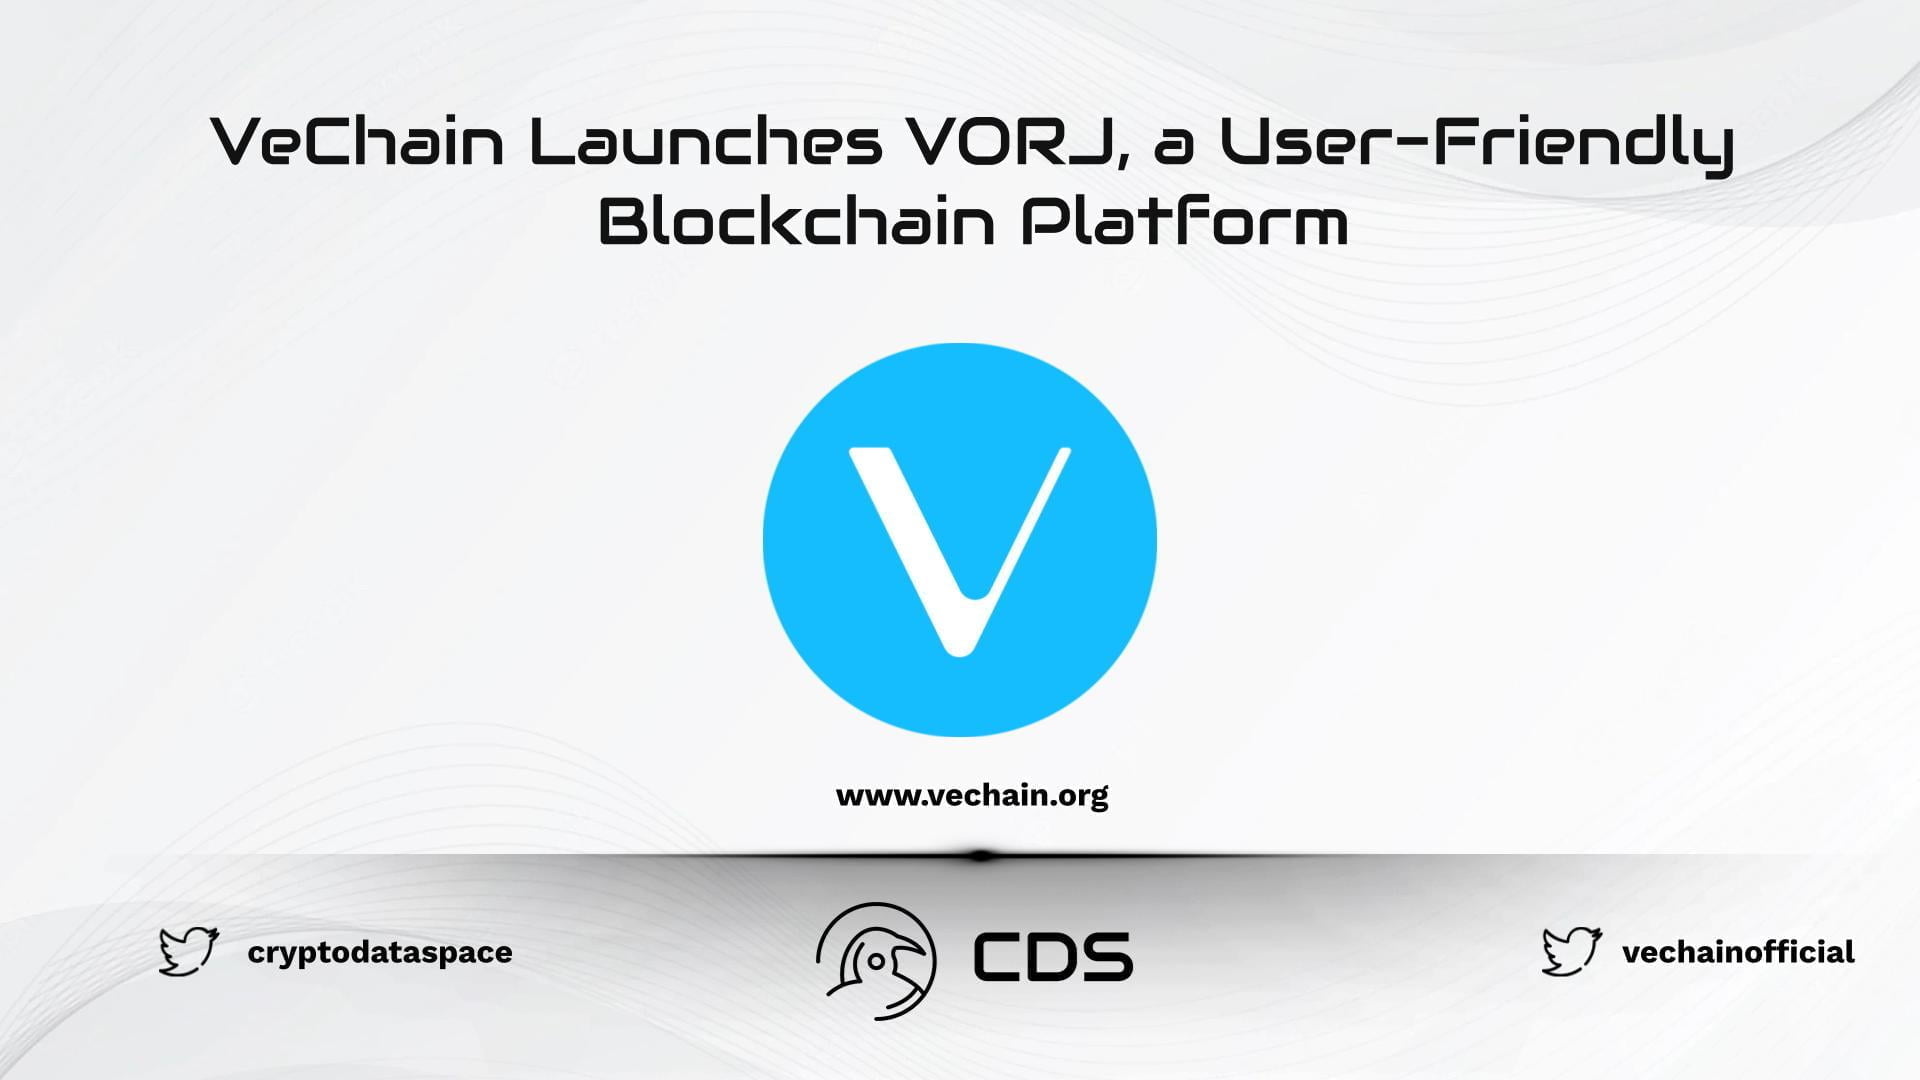 VeChain Launches VORJ, a User-Friendly Blockchain Platform